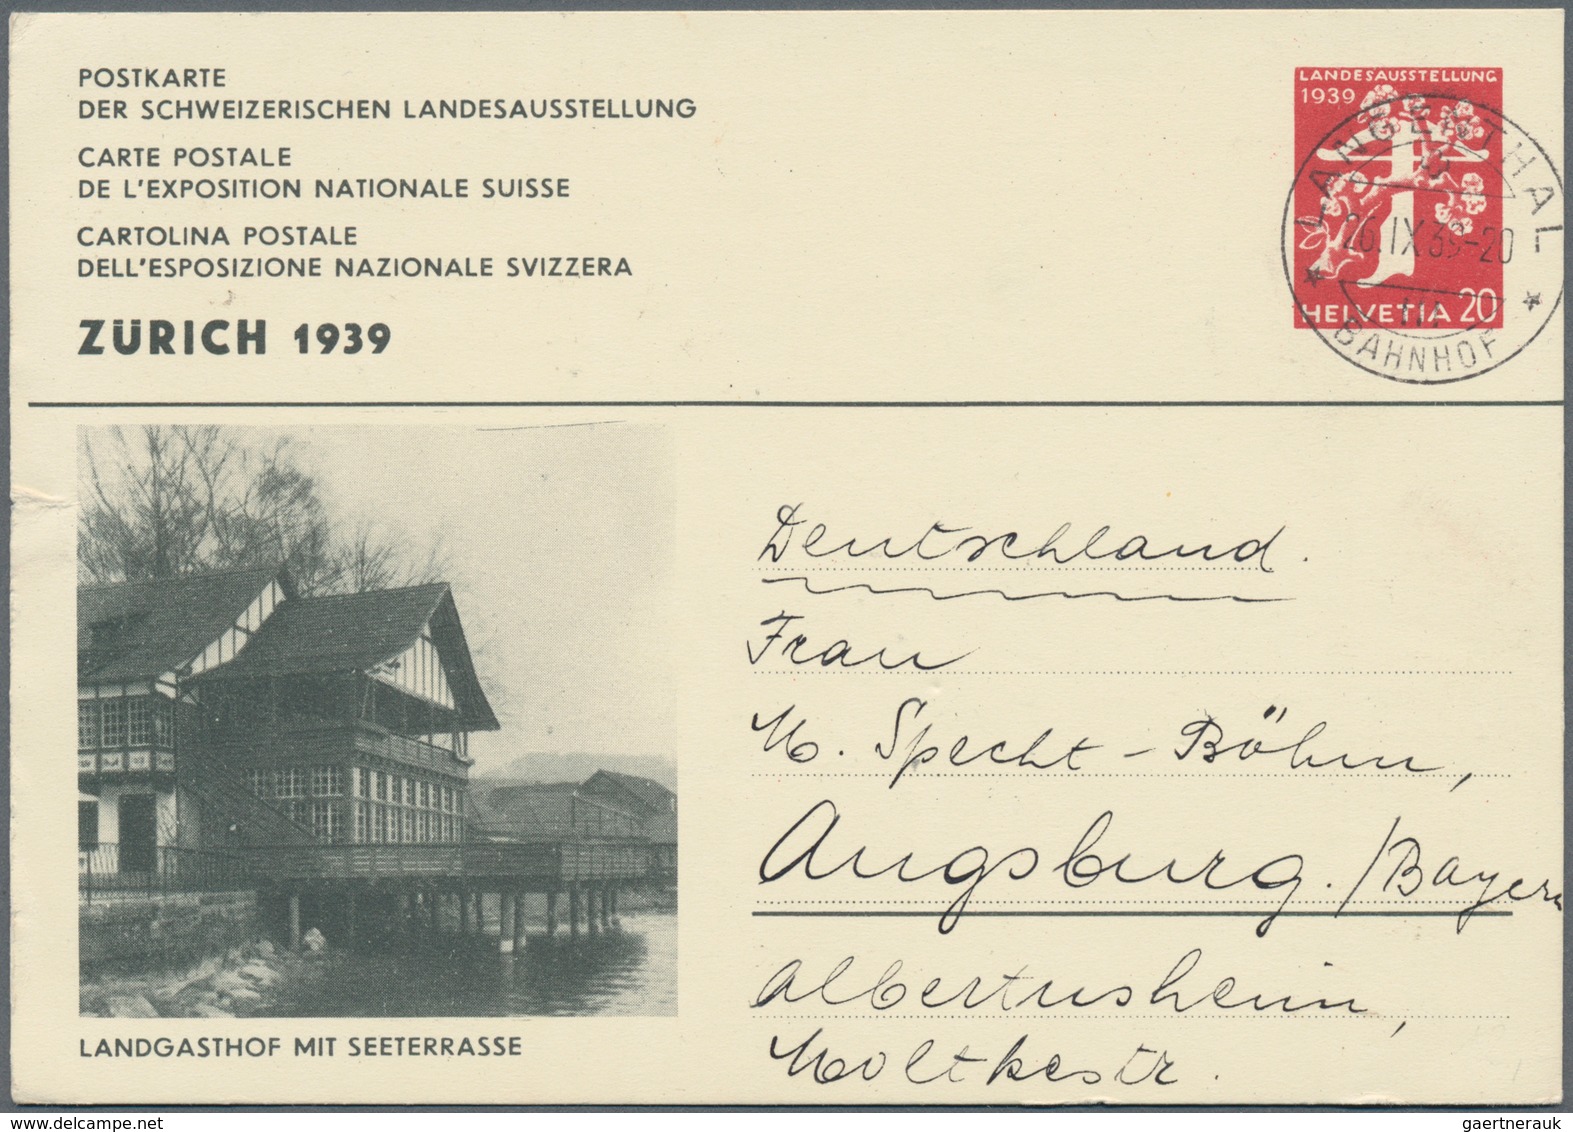 Schweiz - Ganzsachen: 1910/2000 (ca.), reichhaltiger und sehr vielseitiger Bestand von geschätzt sic